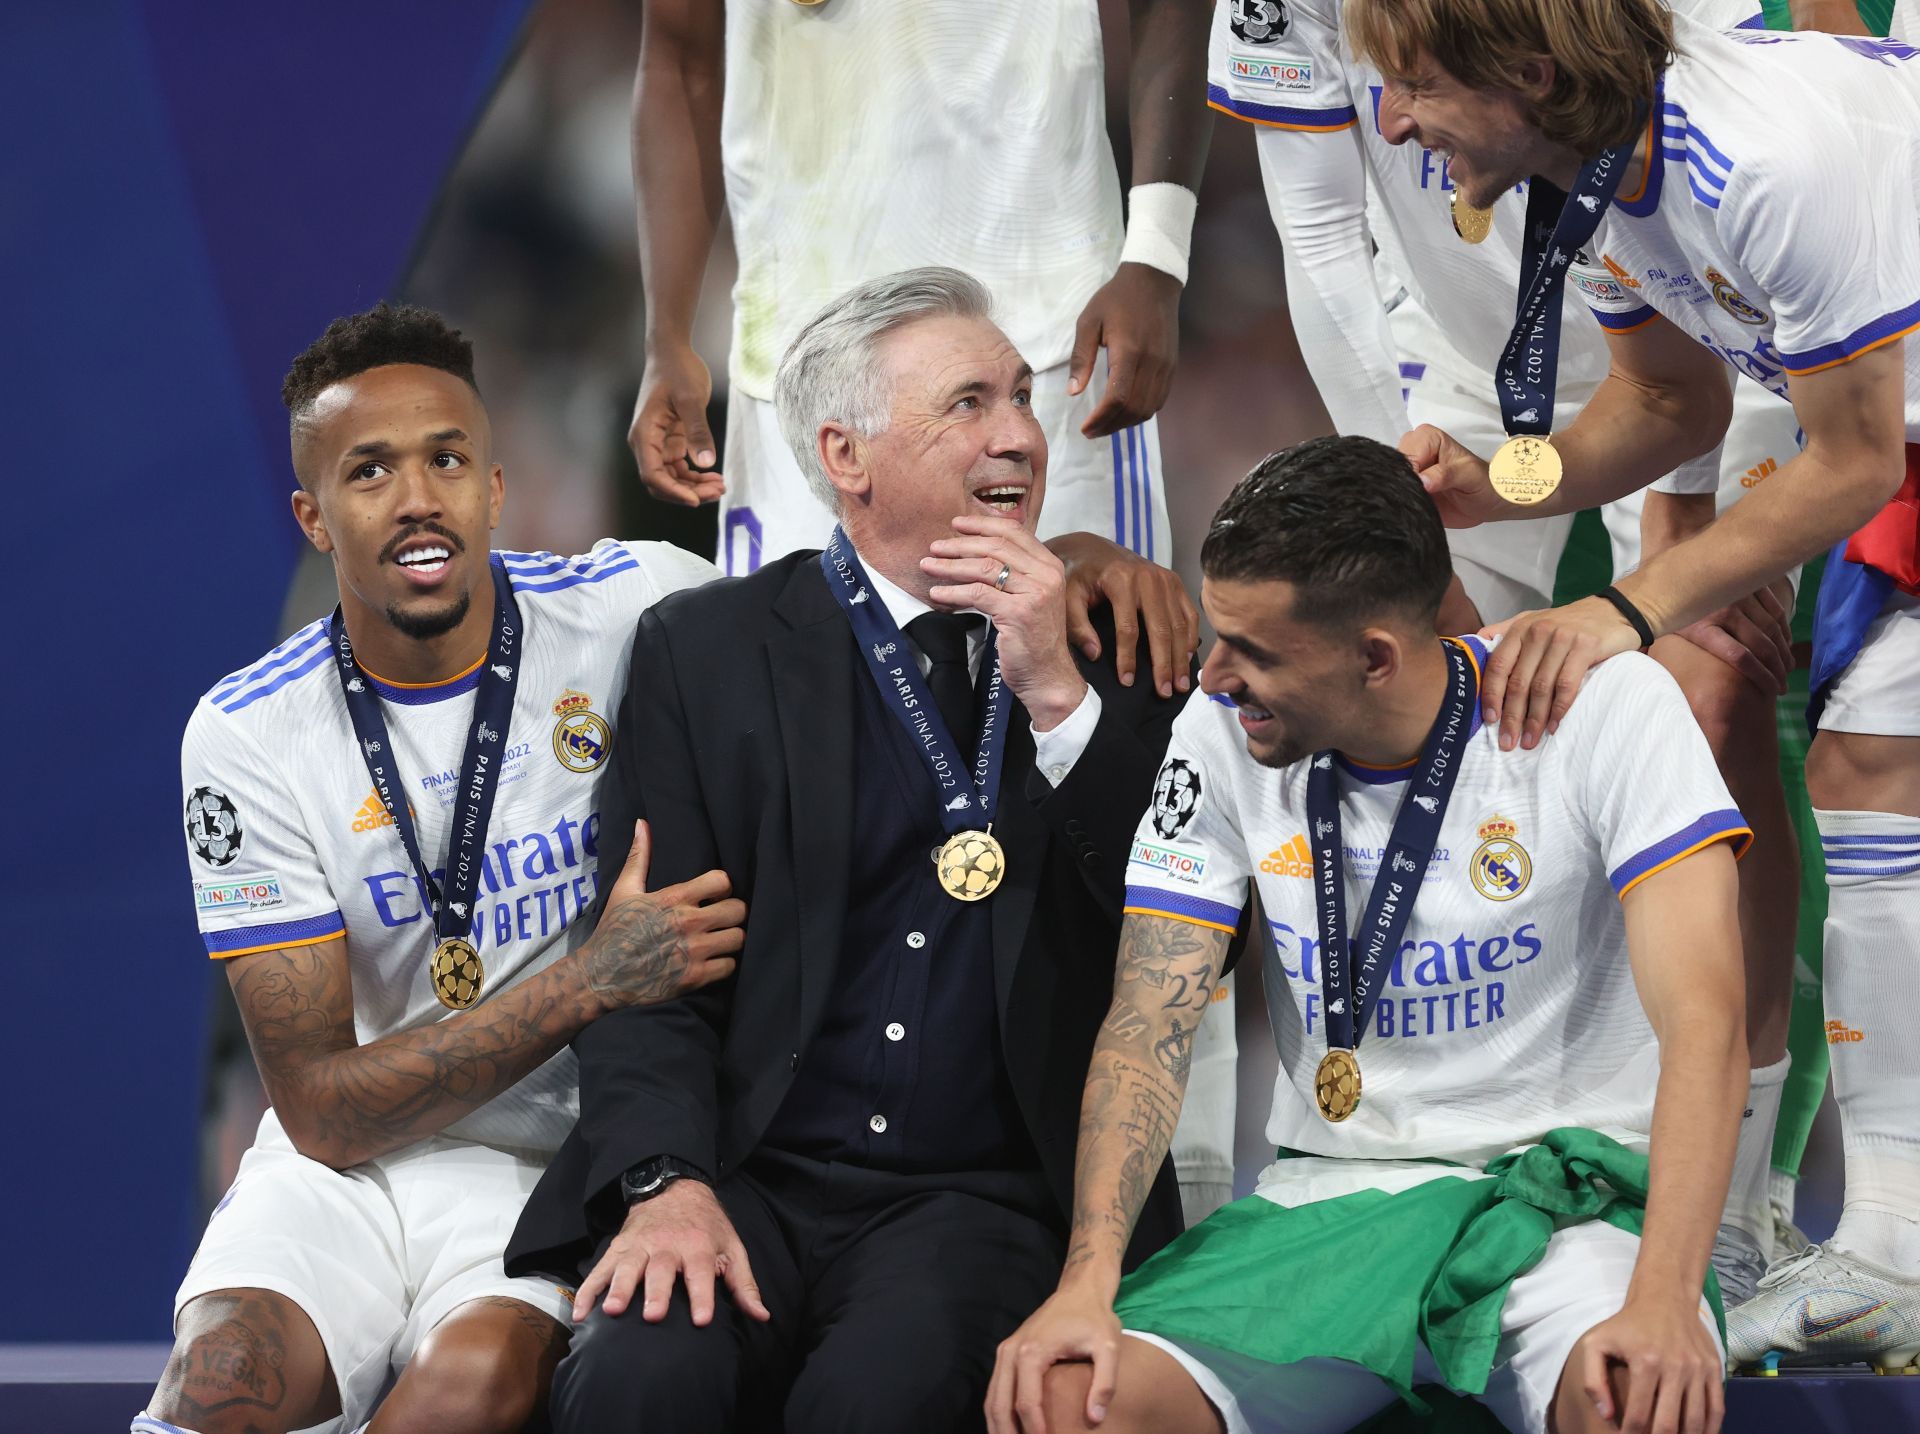 Carlo Ancelotti led Real Madrid to UEFA Champions League success last season